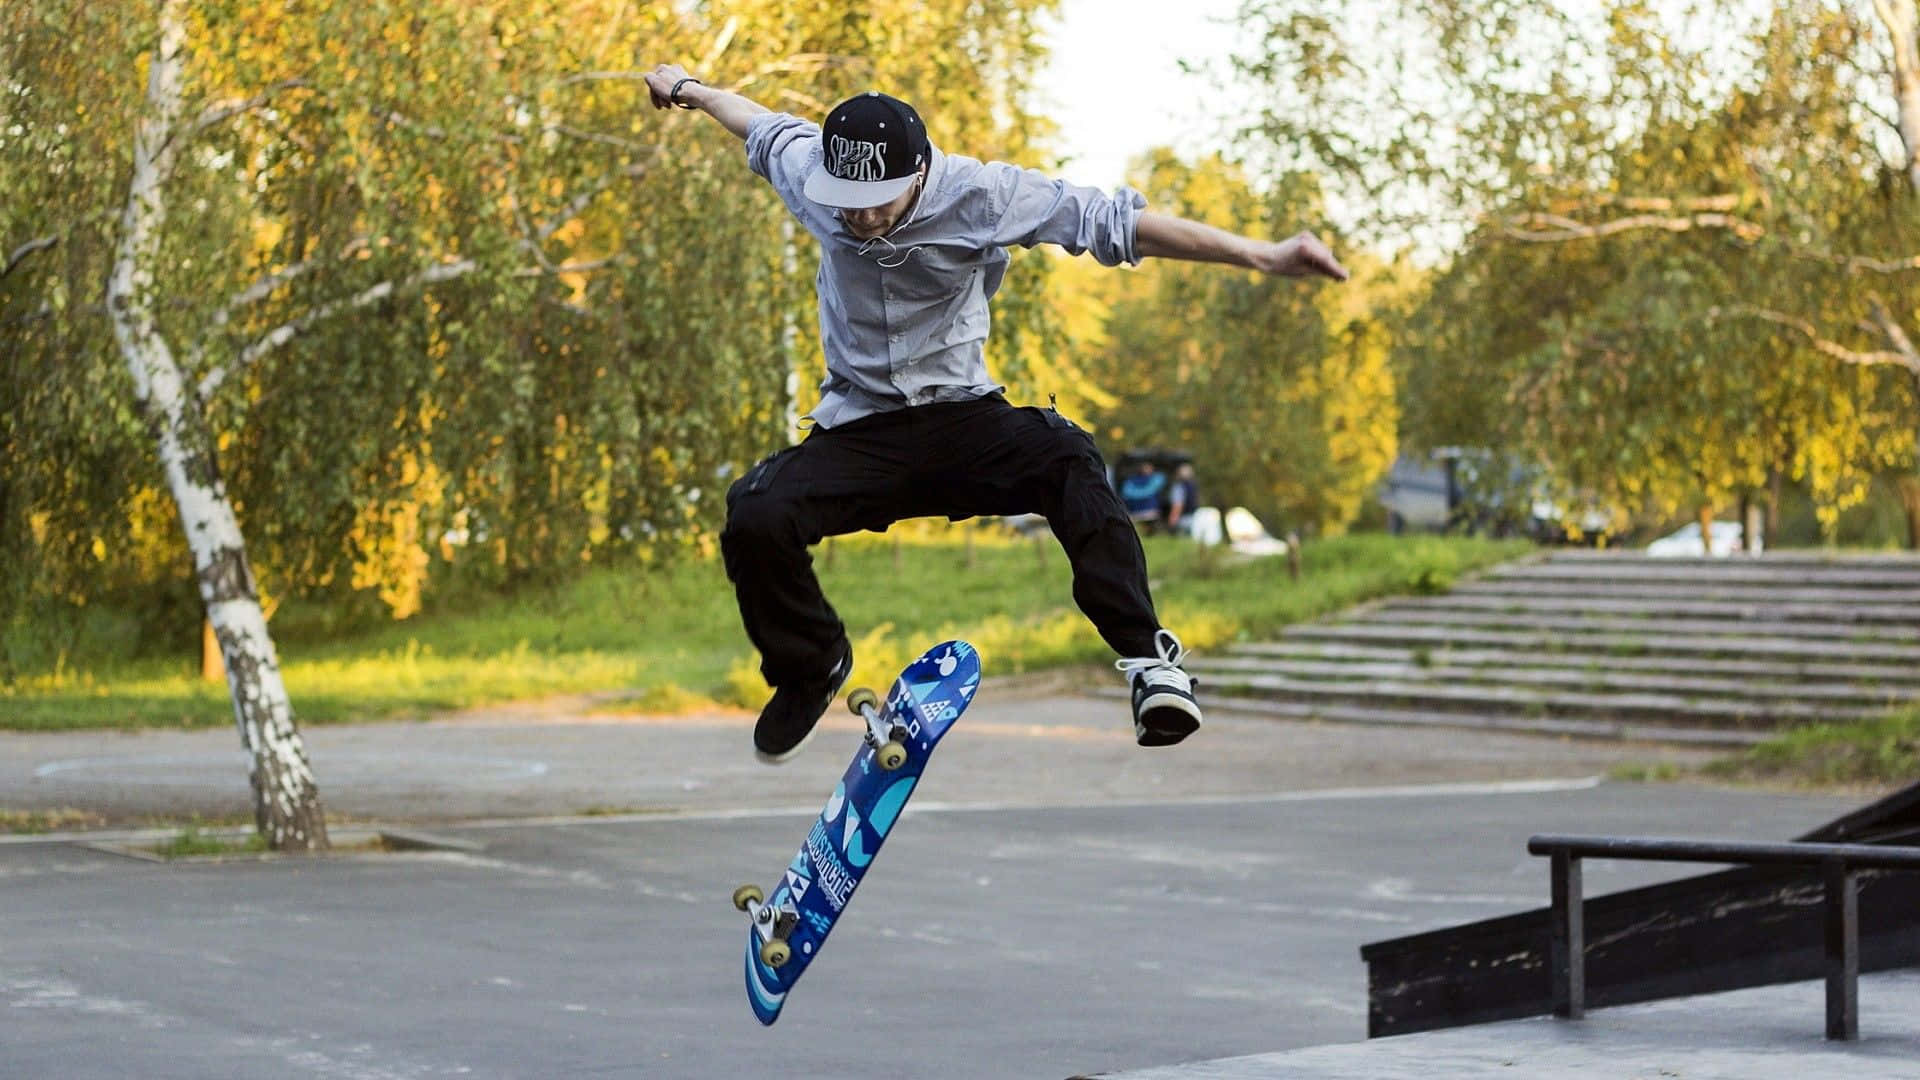 En mand udfører et trick på skateboard. Wallpaper